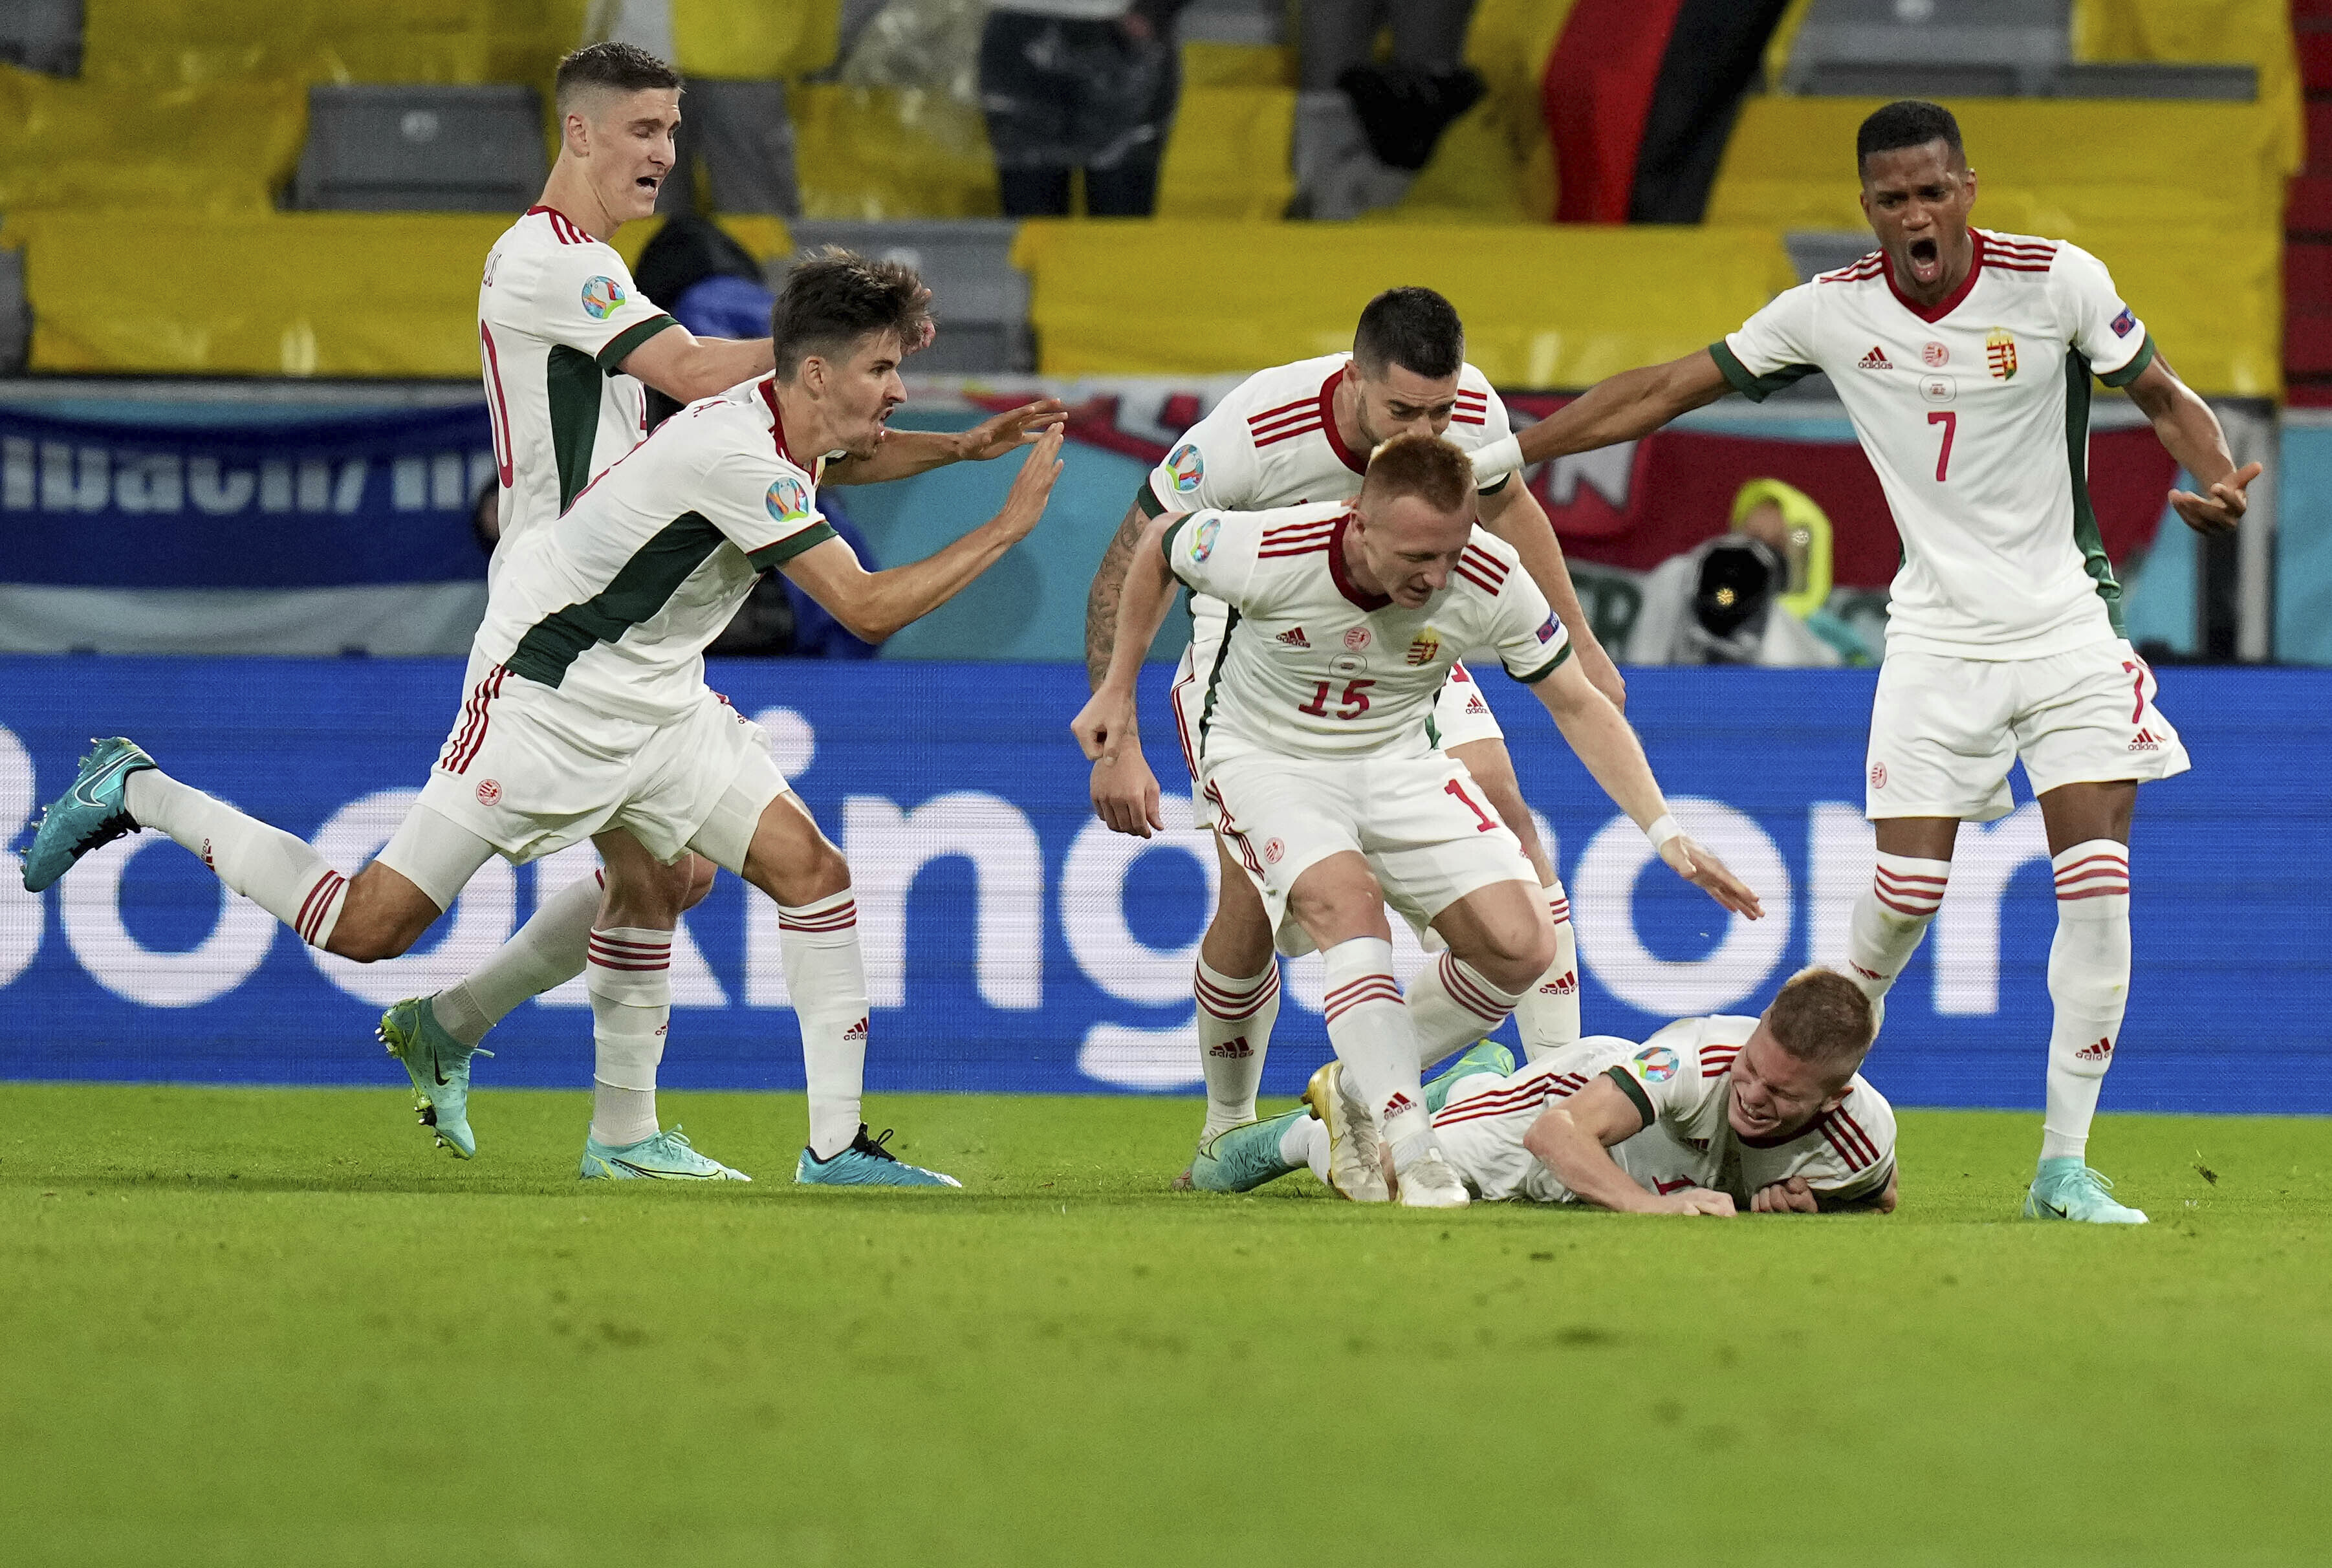 Alemania - Hungría: resumen, resultado y goles | Eurocopa 2021 | Marca